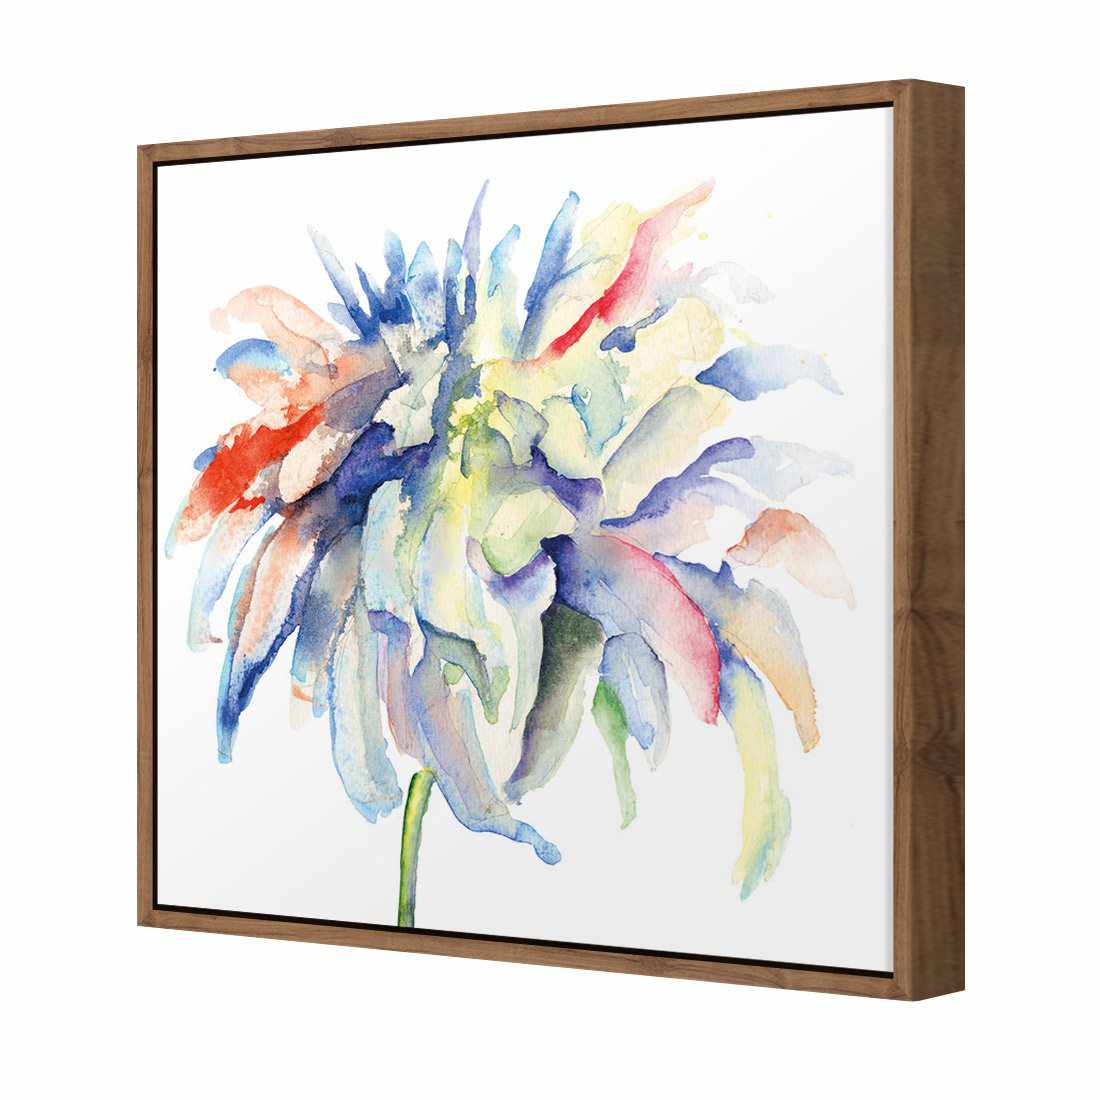 Fairy Floss Canvas Art-Canvas-Wall Art Designs-30x30cm-Canvas - Natural Frame-Wall Art Designs